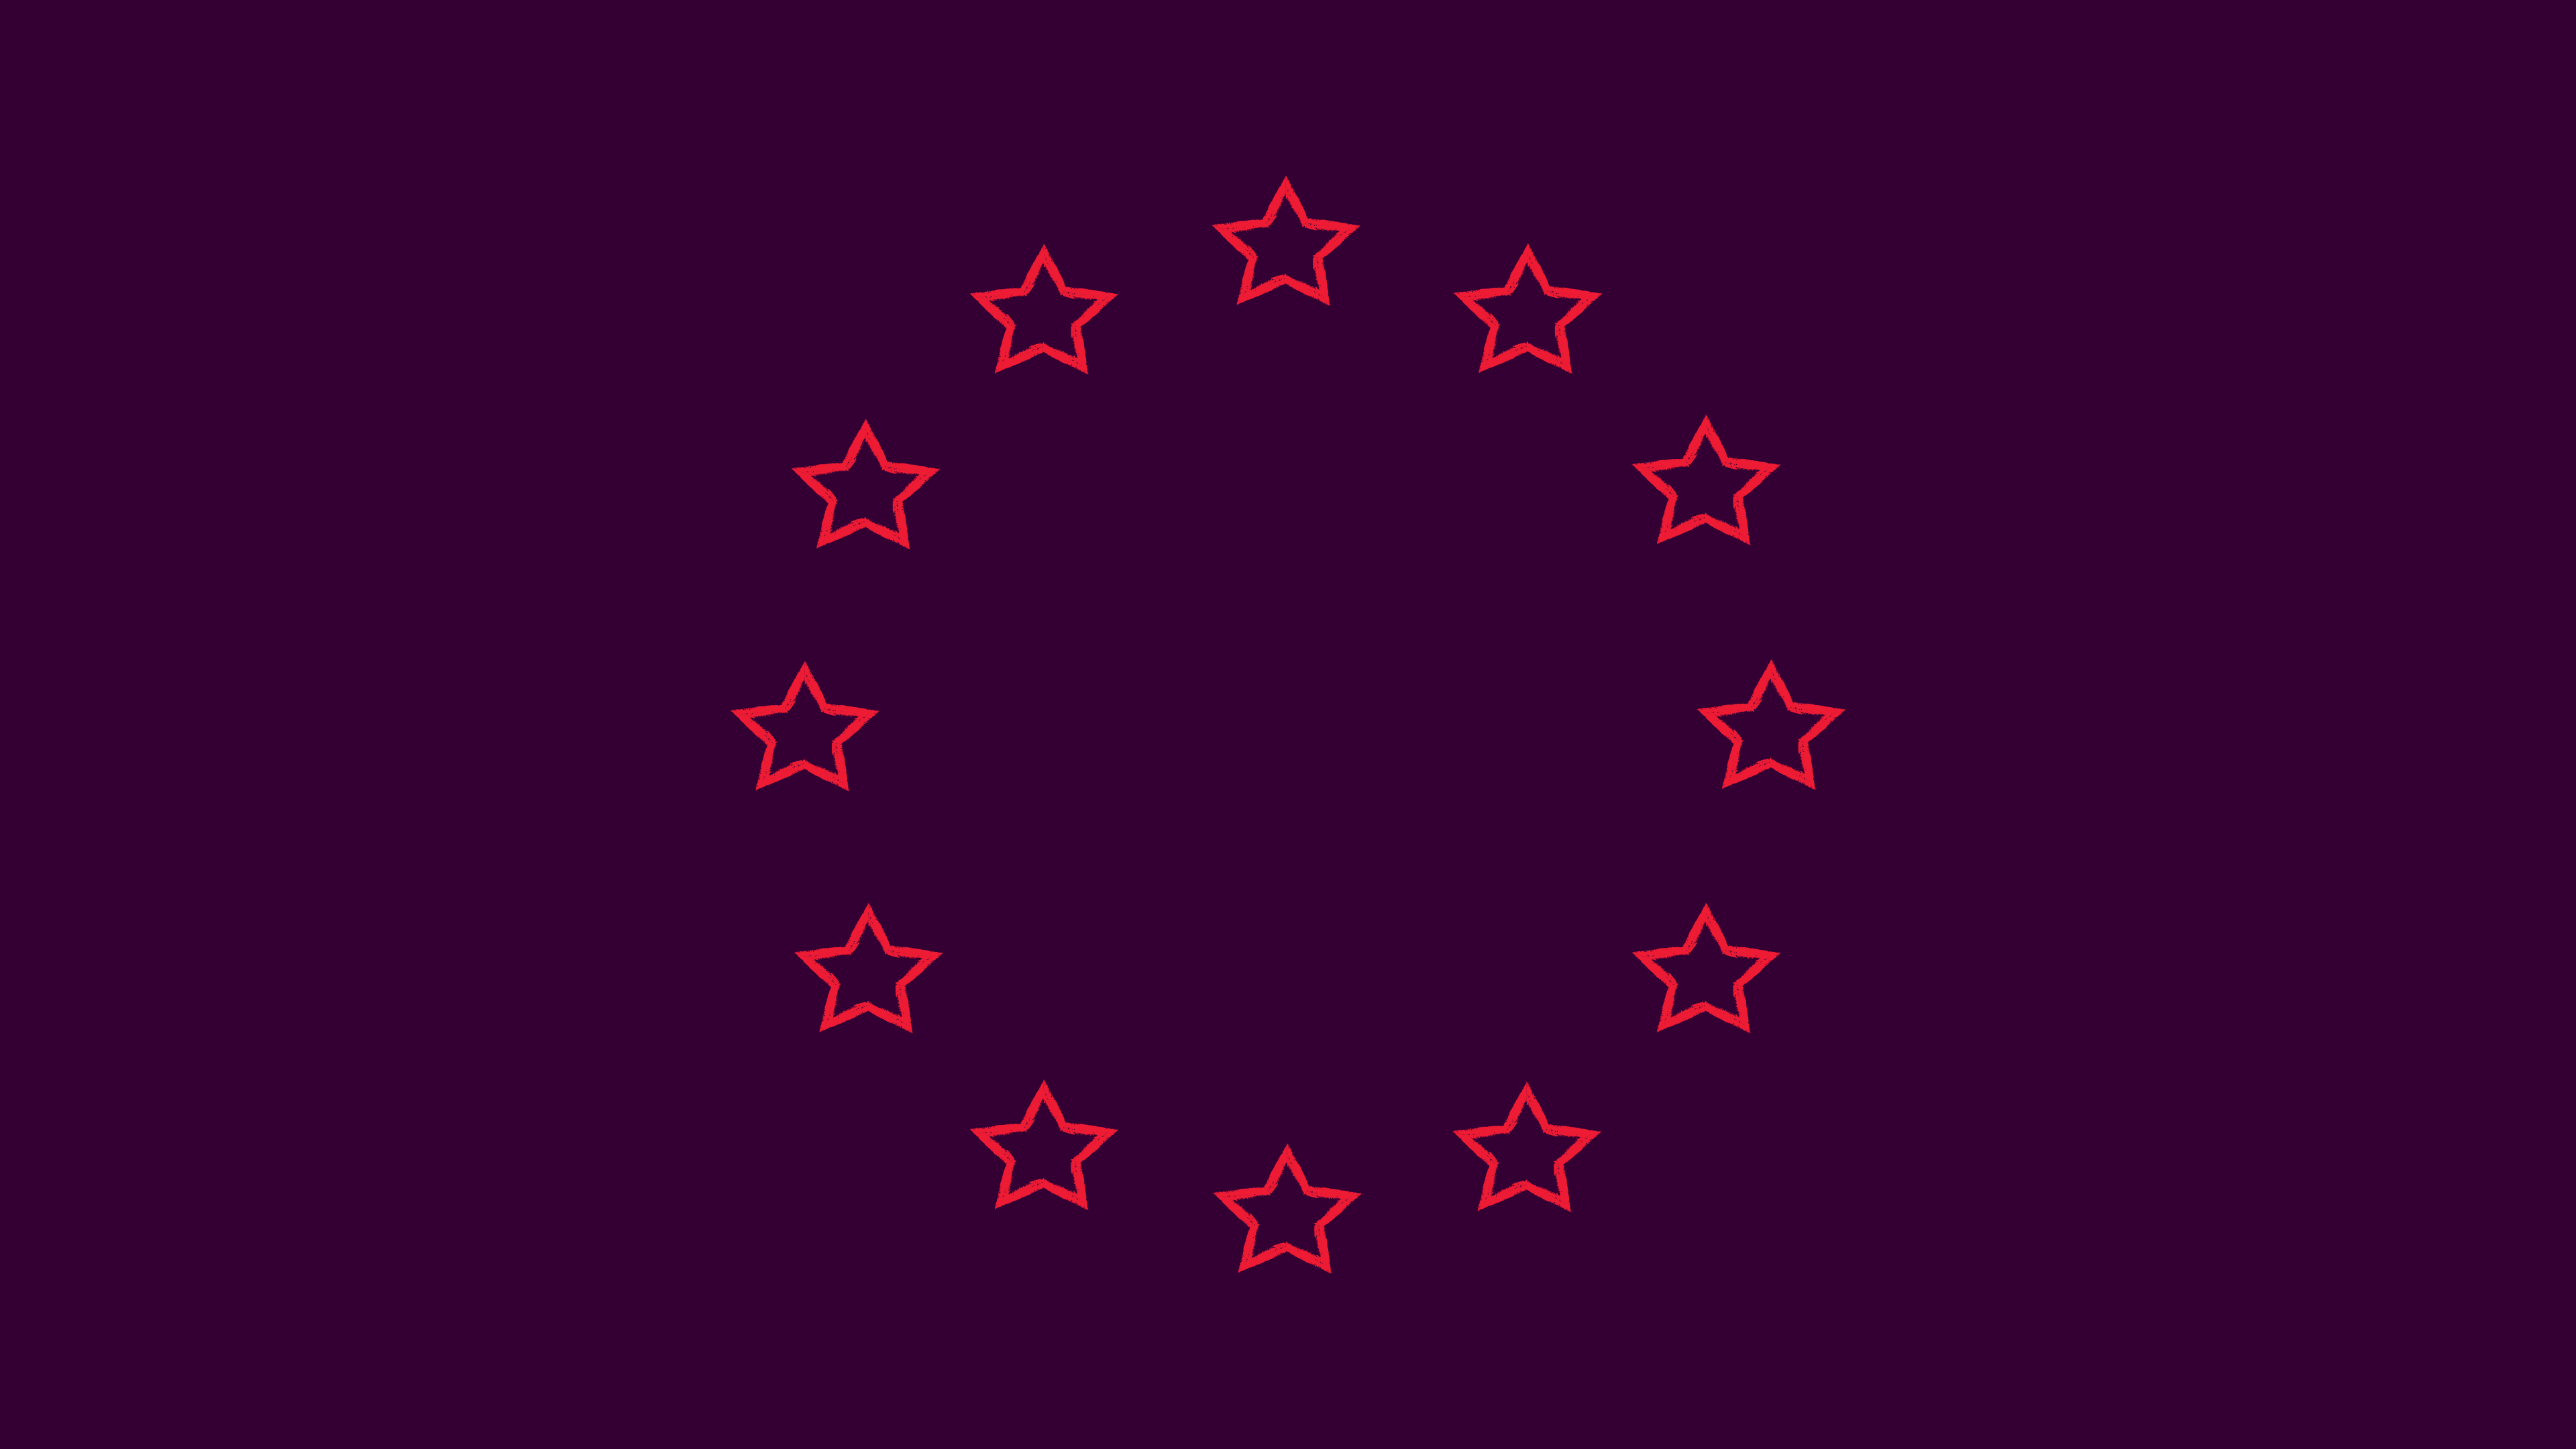 EU:s flagga, fast med lila bakgrund och röda stjärnor.